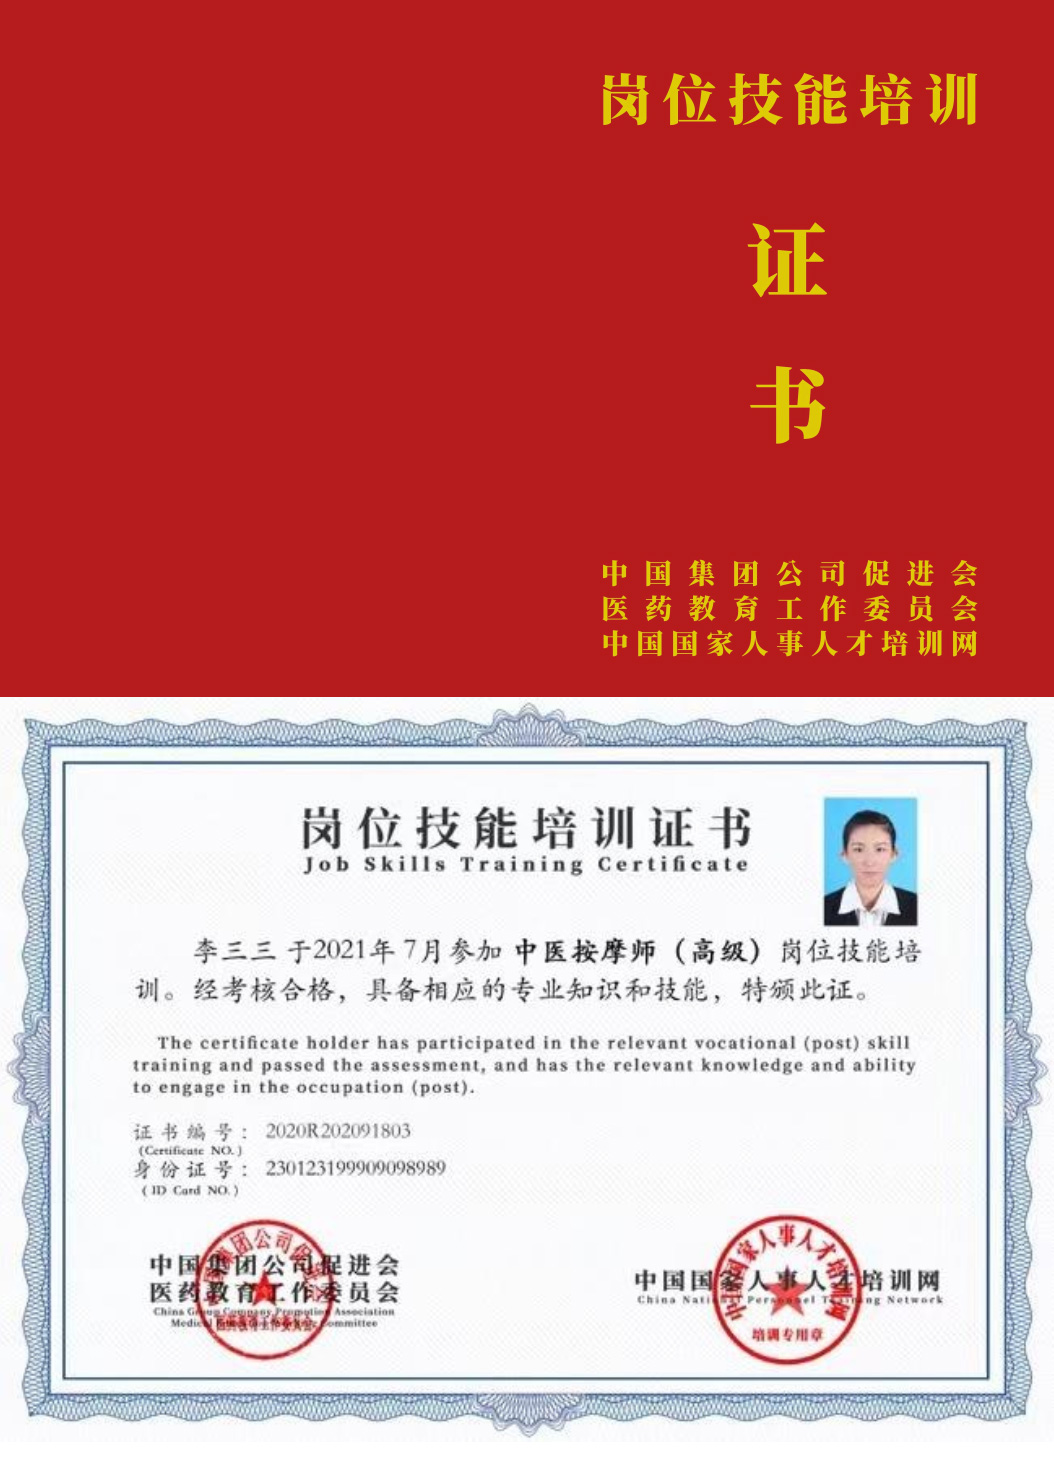 中国国家人事人才培训网 医学美容咨询师 岗位技能培训证书